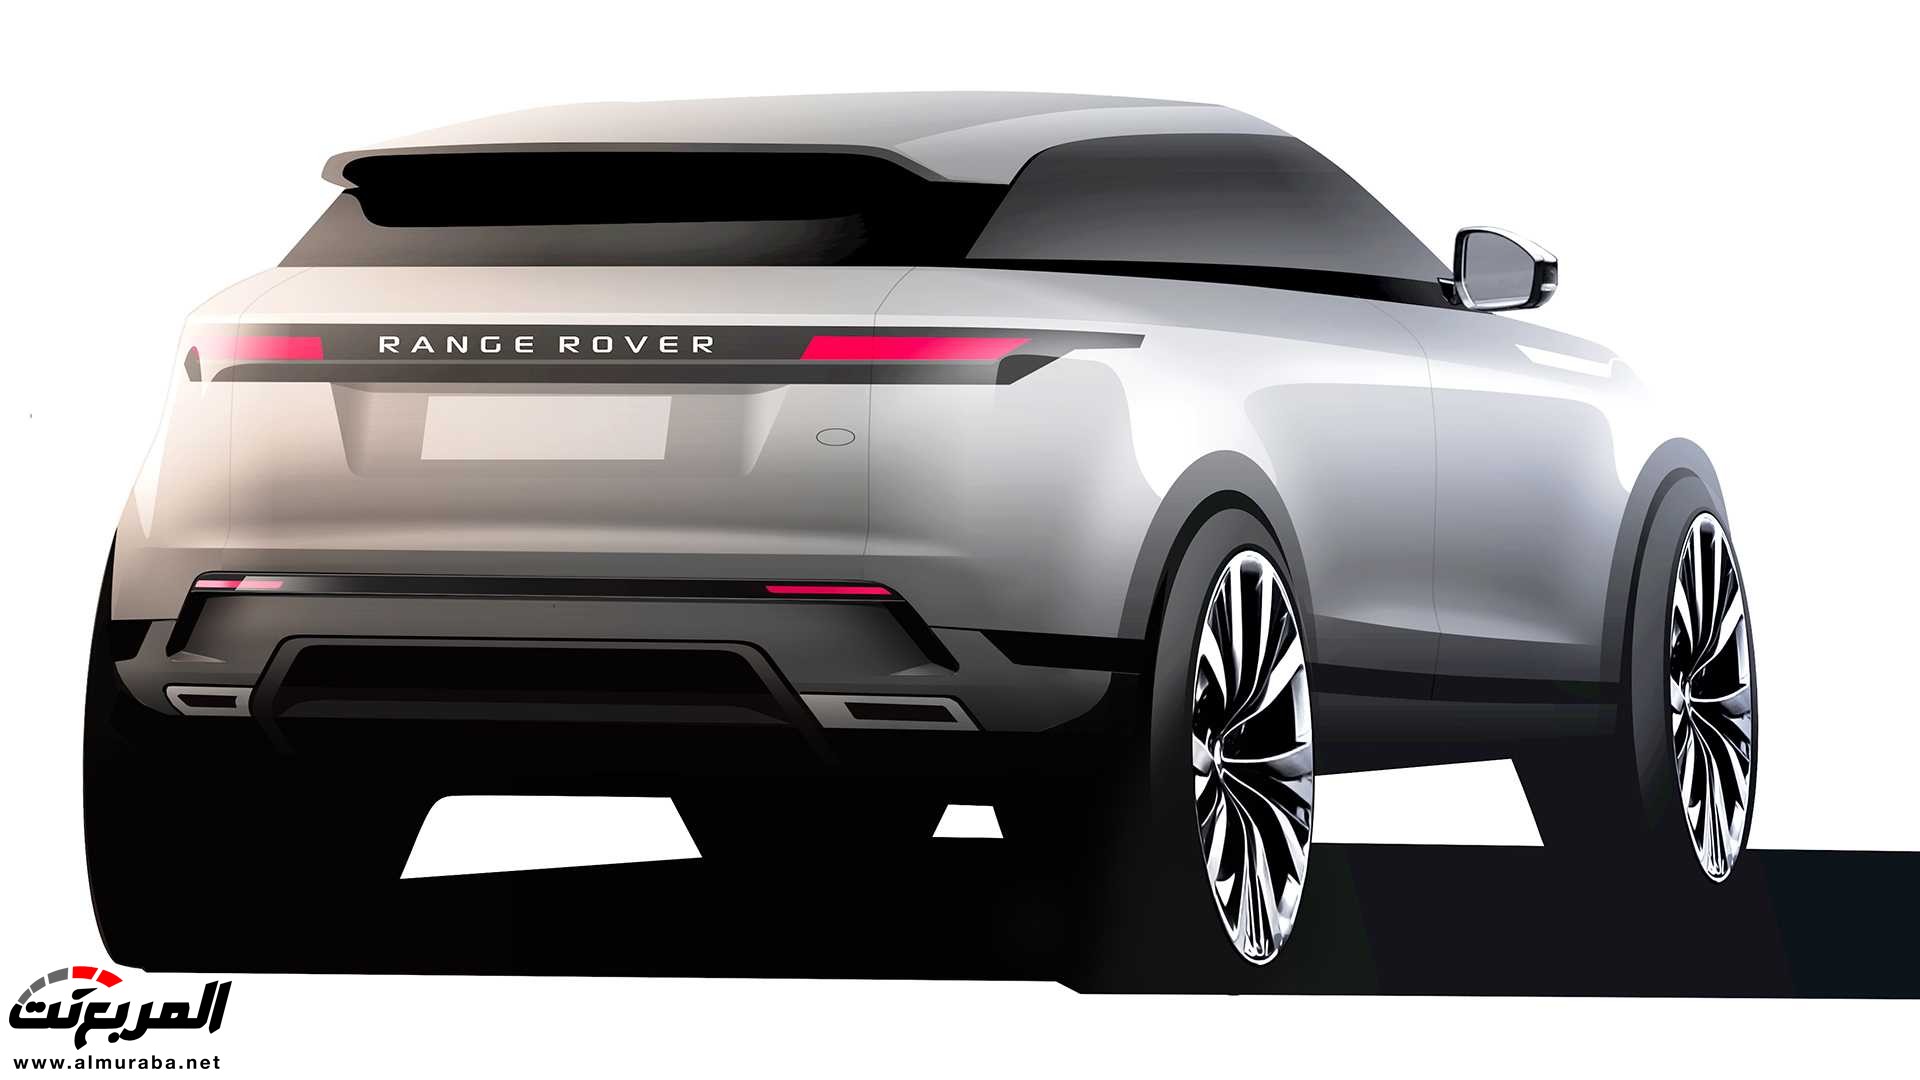 اهم 7 معلومات عن رنج روفر ايفوك 2020 الجديدة كلياً Range Rover Evoque 89